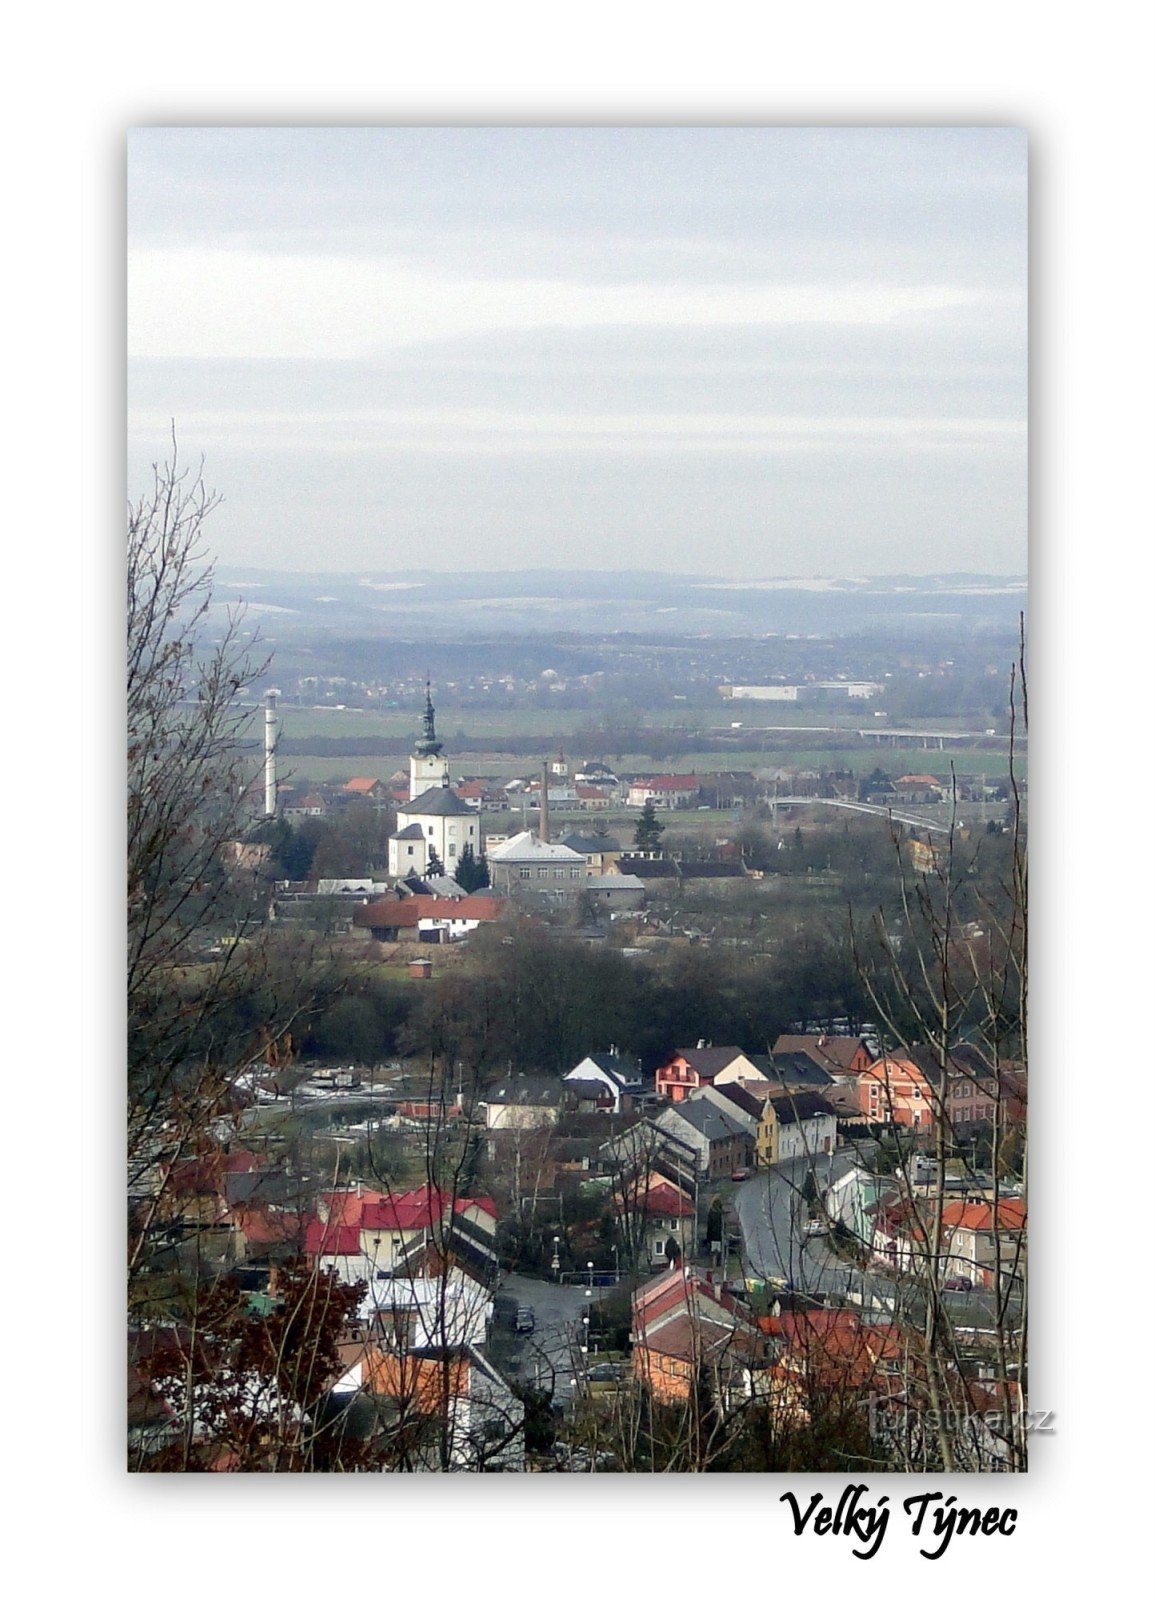 quang cảnh của Velký Týnec từ đài tưởng niệm